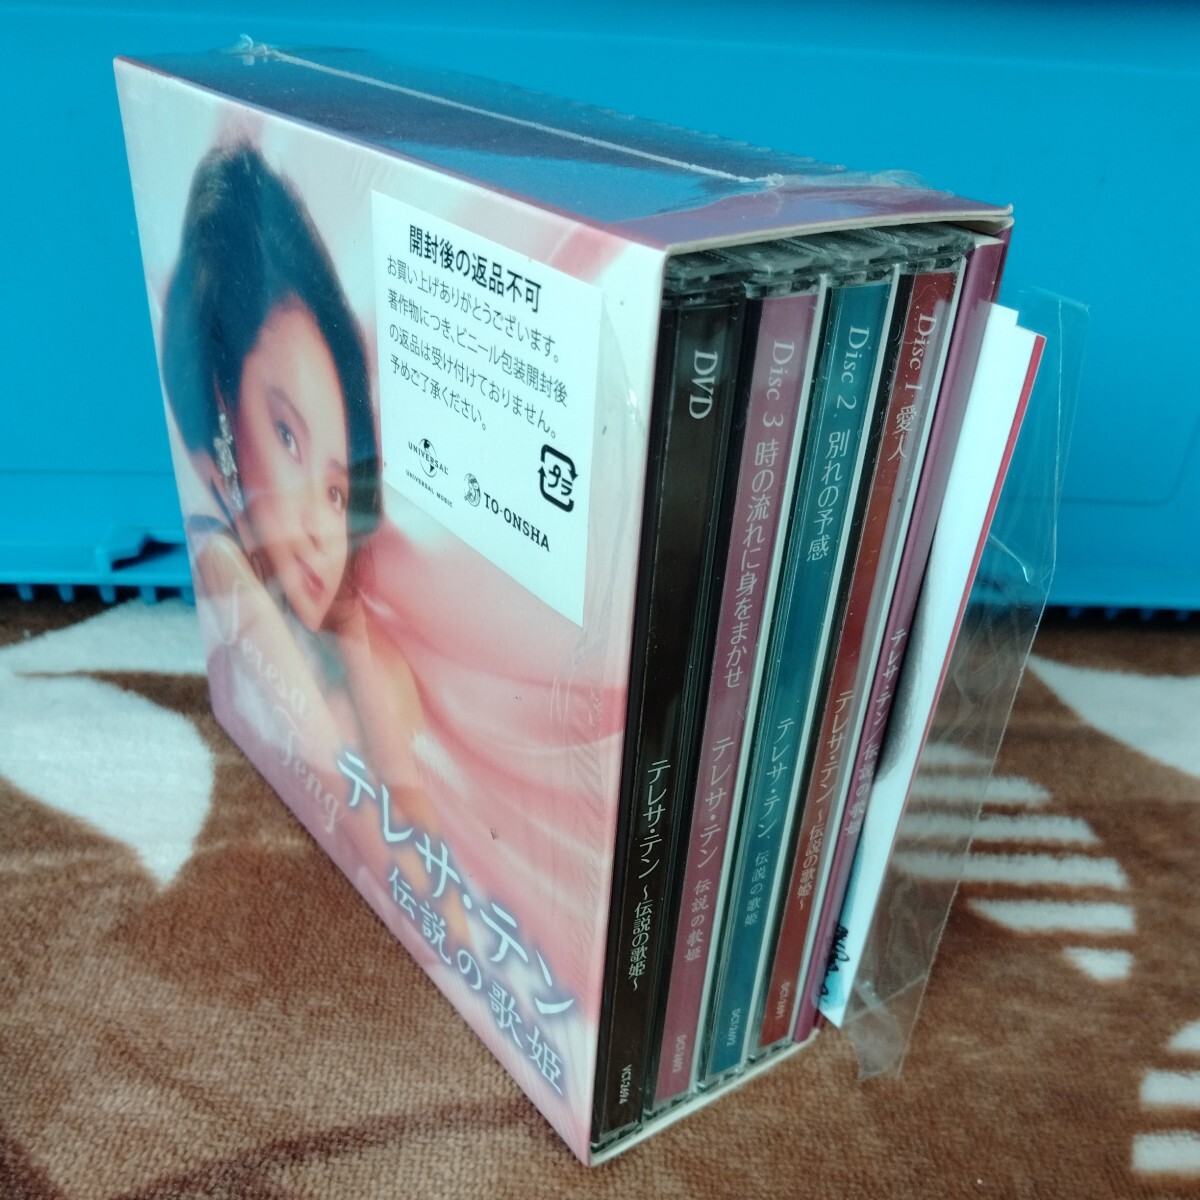 テレサ・テン 伝説の歌姫 CD/DVDセット プロマイド付  経年品 介護で不在/へき地在住で連絡遅く発送は週1回です の画像9